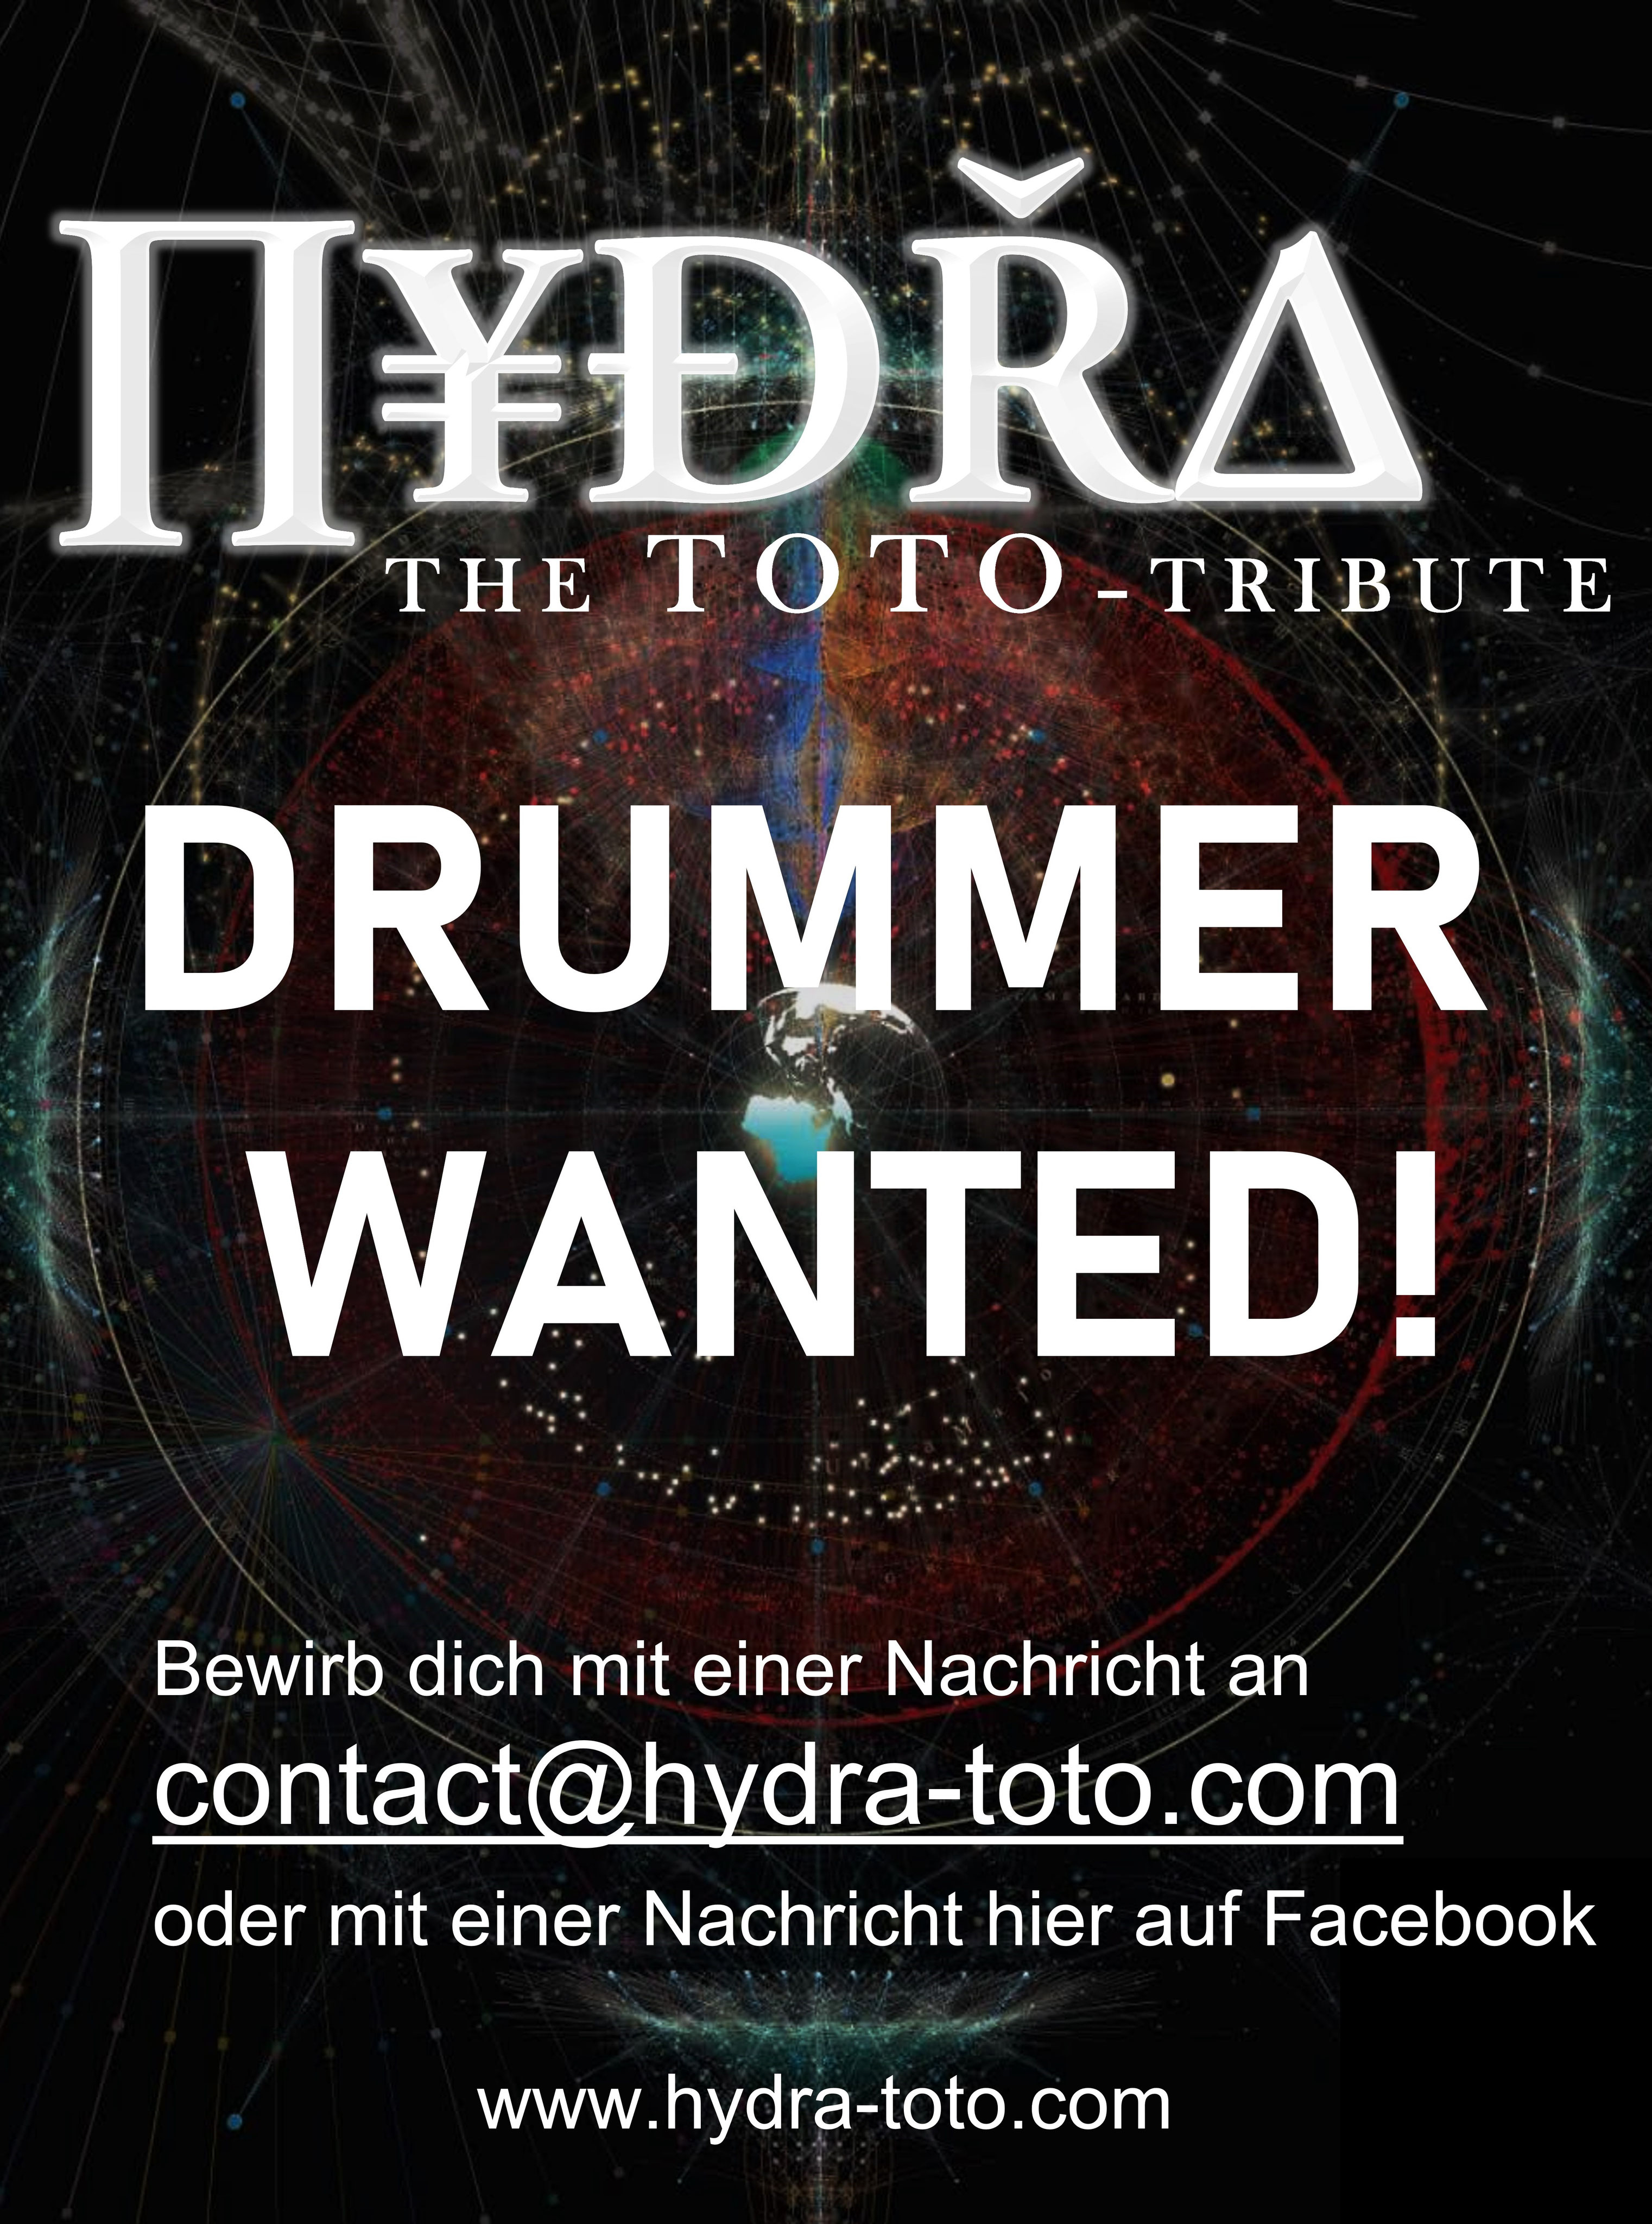 (c) Hydra-toto.com